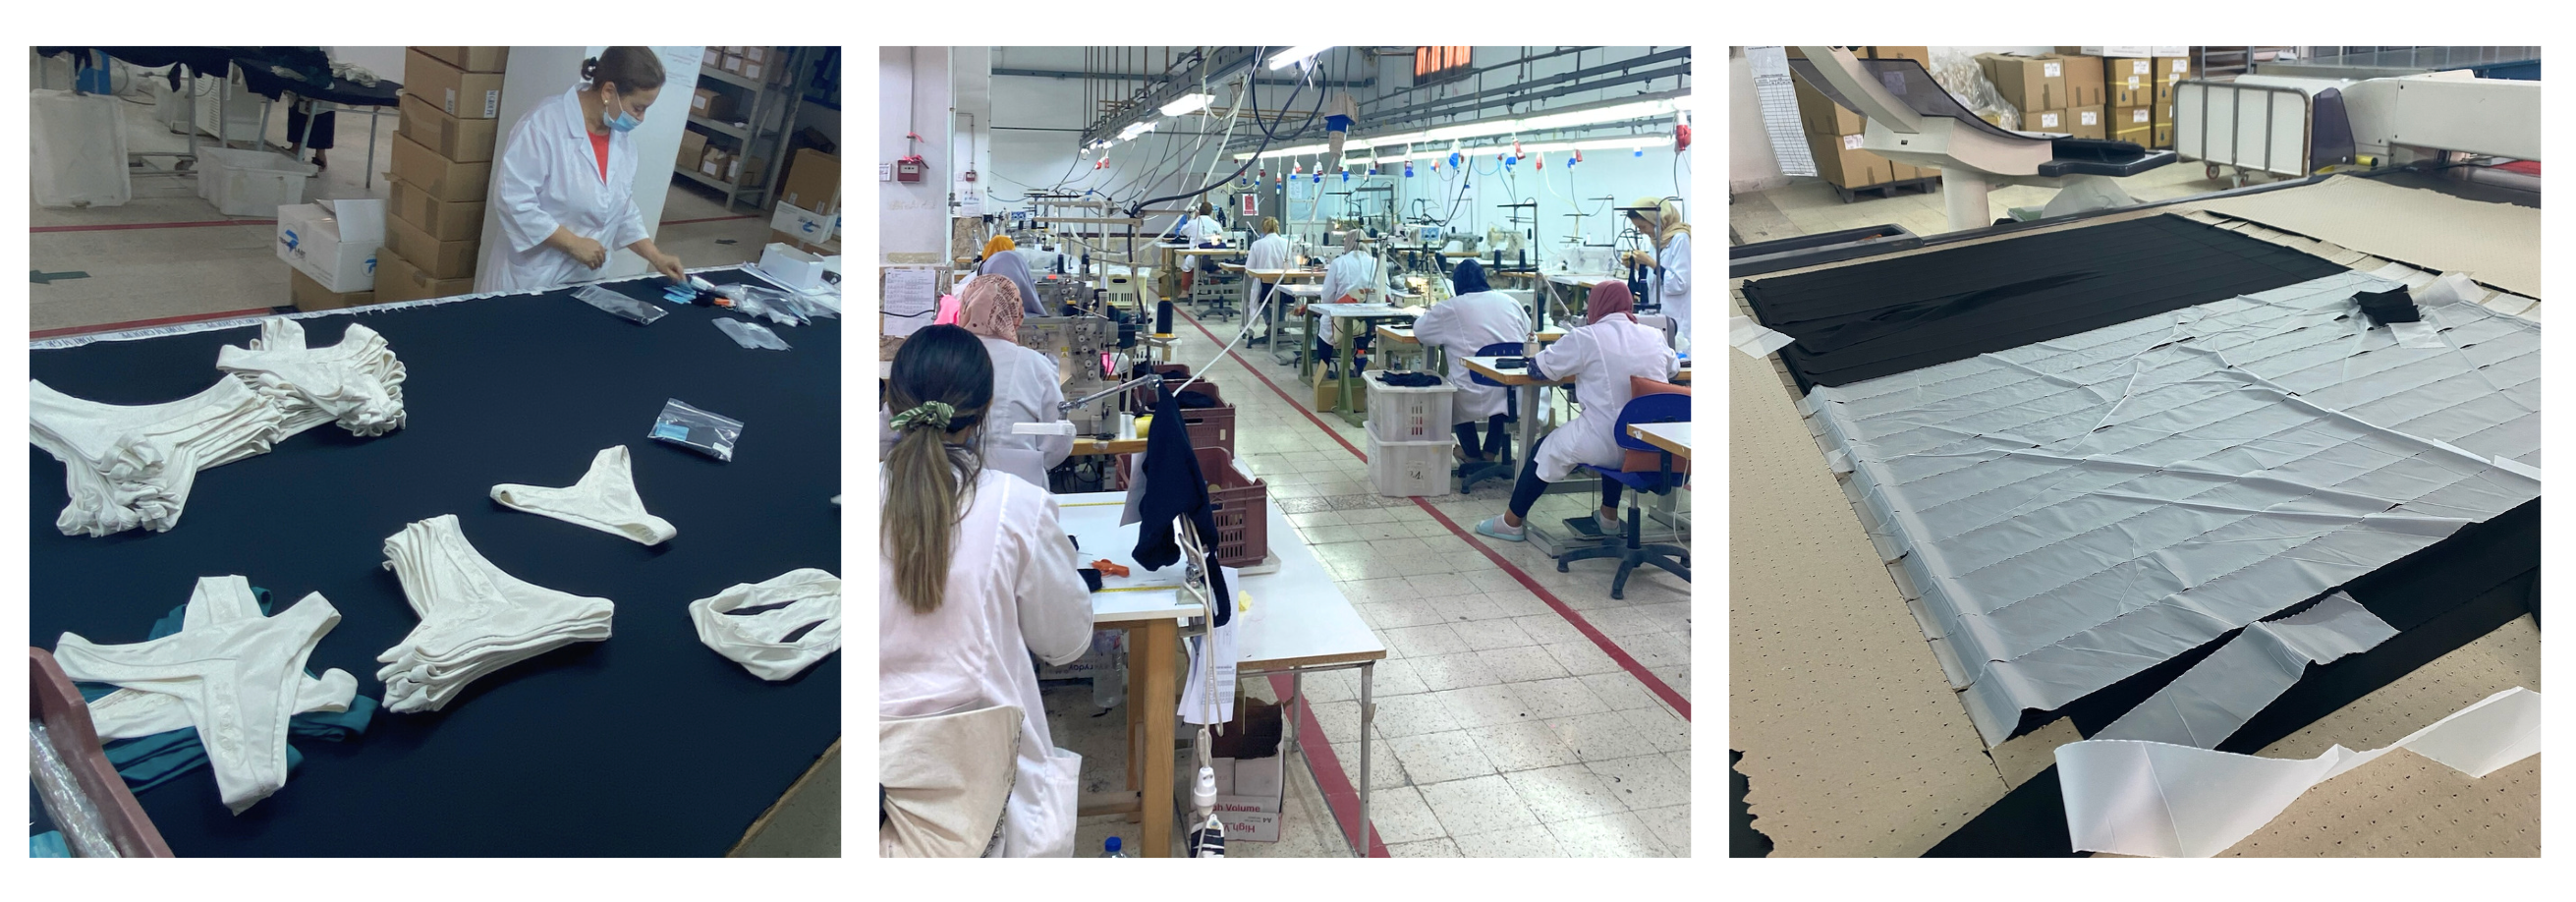 Fabrieksfoto's die laten zien hoe Via di Gioia ethisch en duurzaam werkt